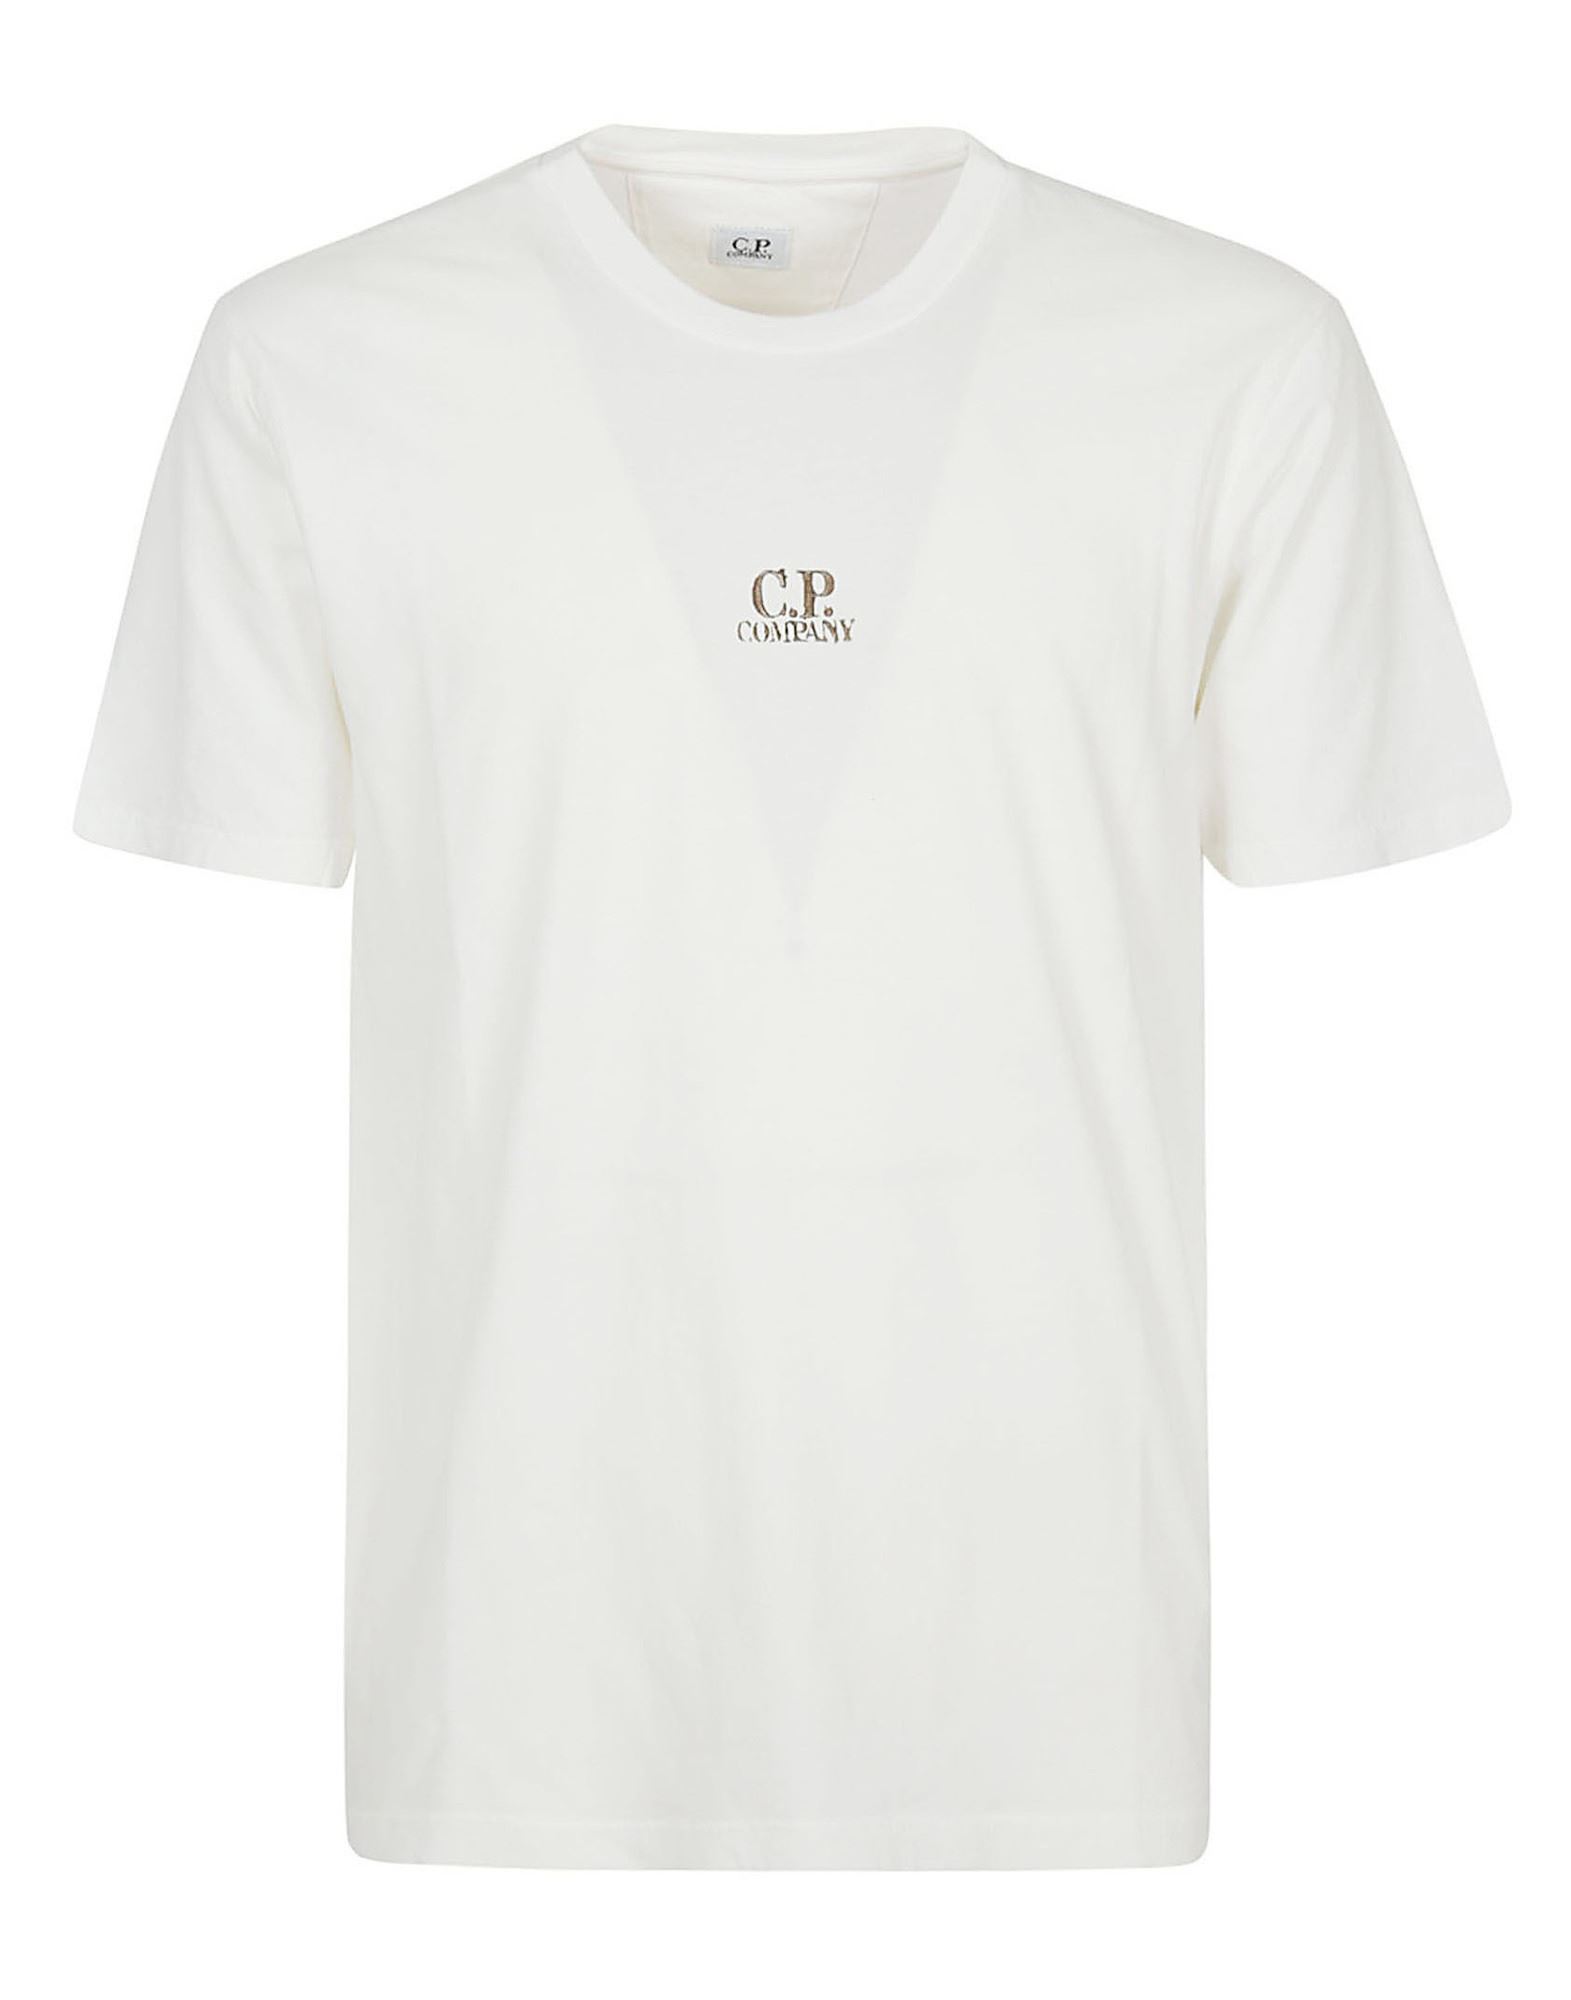 C.P. COMPANY T-shirts Herren Elfenbein von C.P. COMPANY